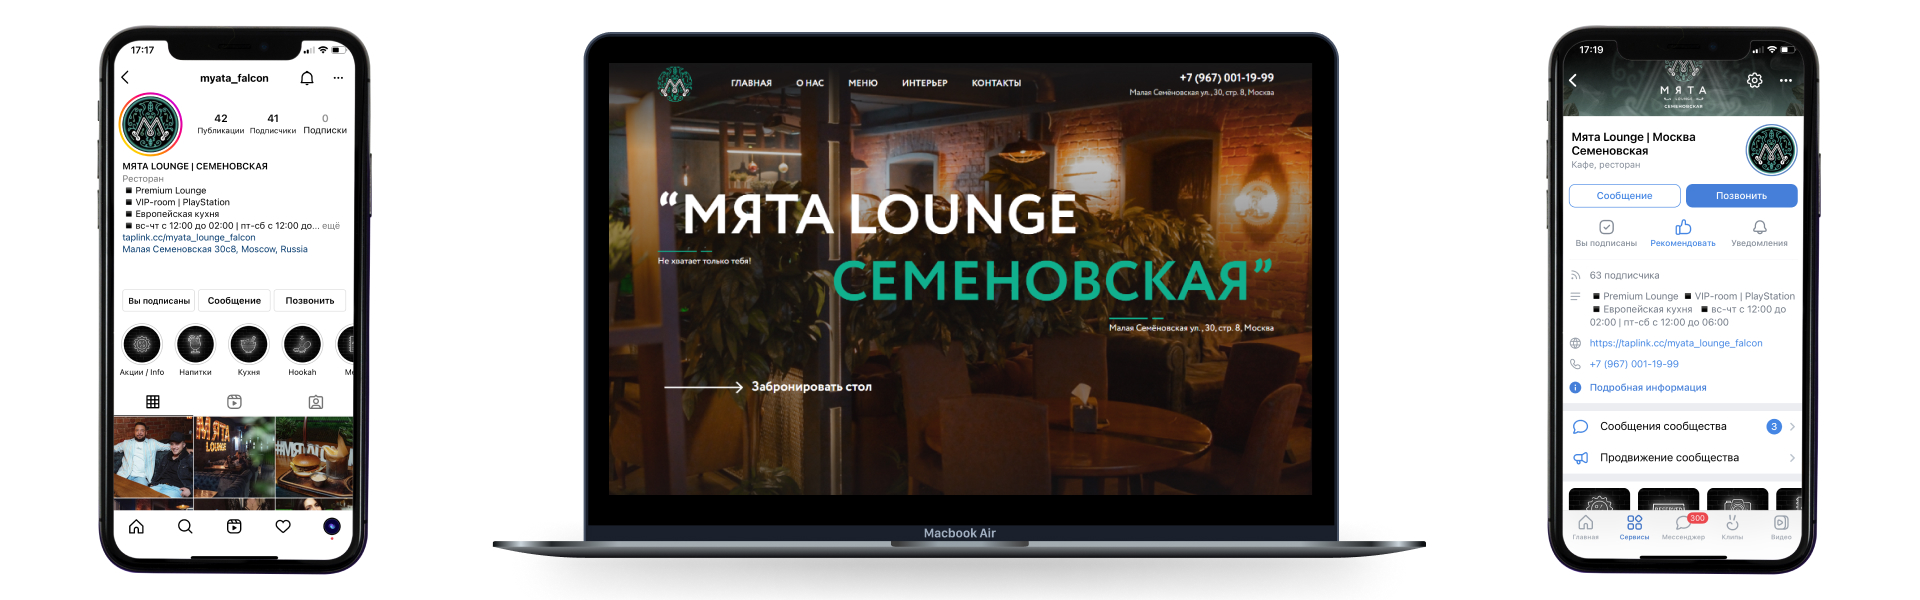 Кальянная
Мята Lounge Семеновская